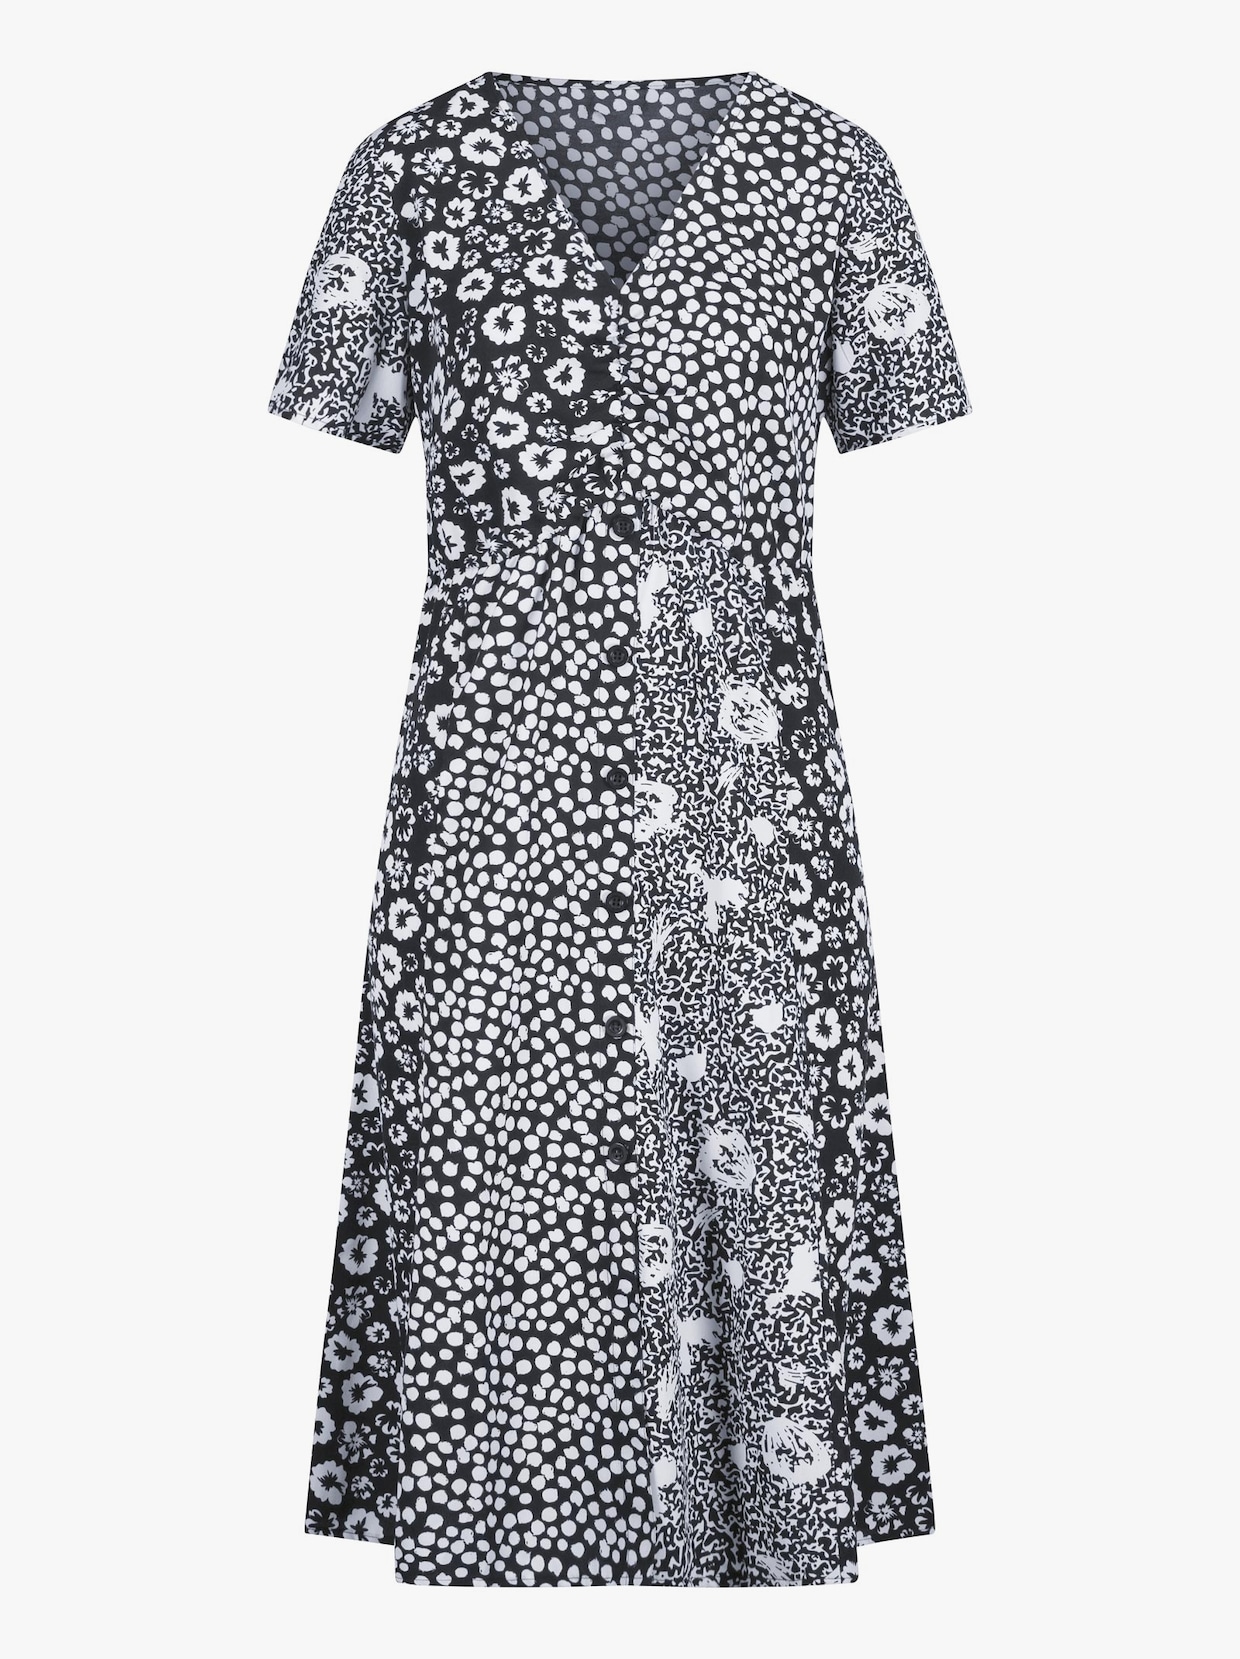 Šaty s potiskem - černá-bílá-vzor